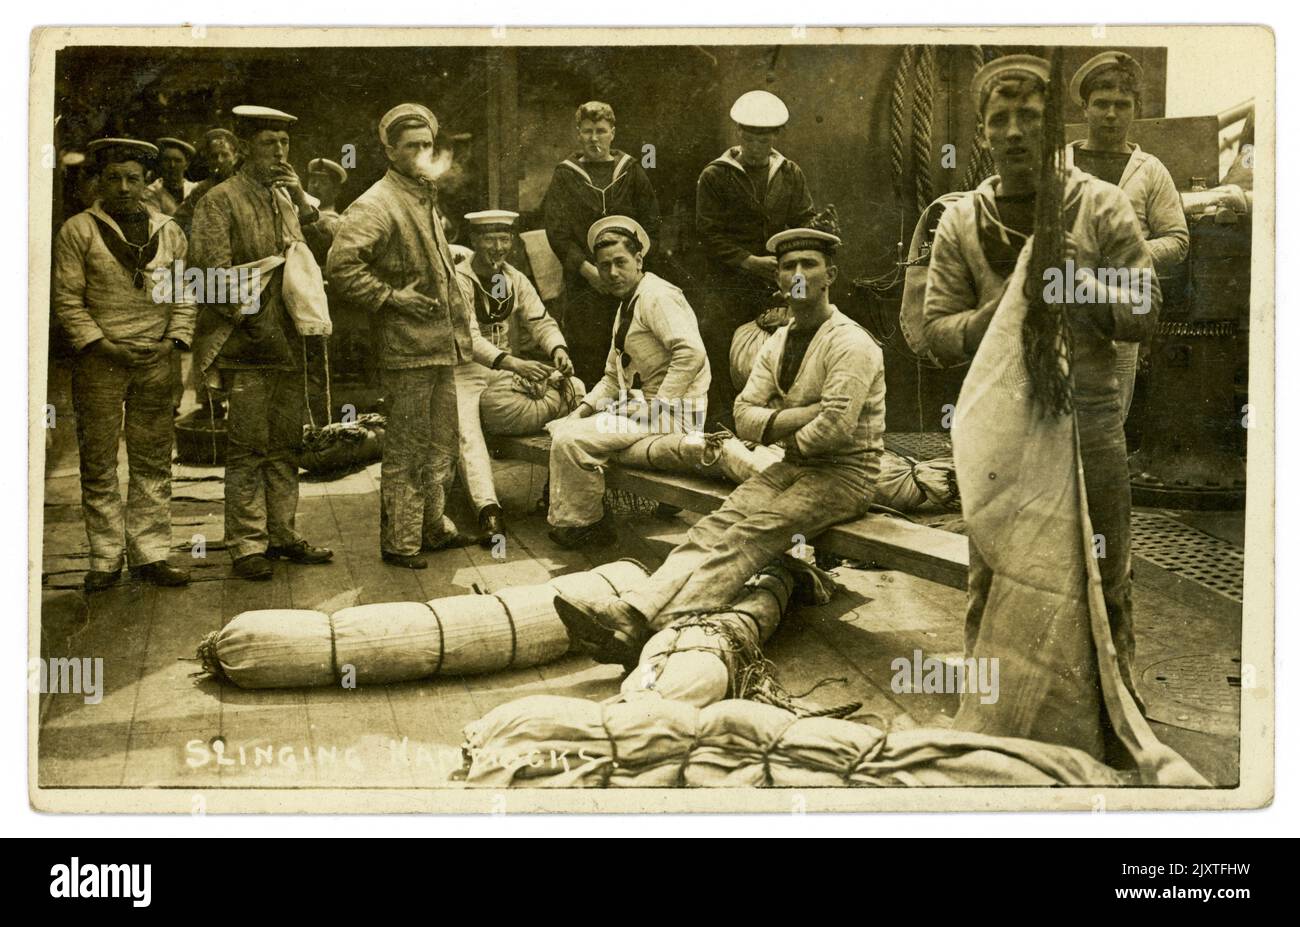 Originalpostkarte aus der Zeit WW1, auf der eine Gruppe von Matrosen der Royal Navy Hängematten auf einem Schiff schleudern, viele Charaktere, ein Mann raucht, datiert und am 5. 1916. Oktober, kurz vor Kriegsende, aus Portsmouth, Großbritannien, gepostet wird Stockfoto